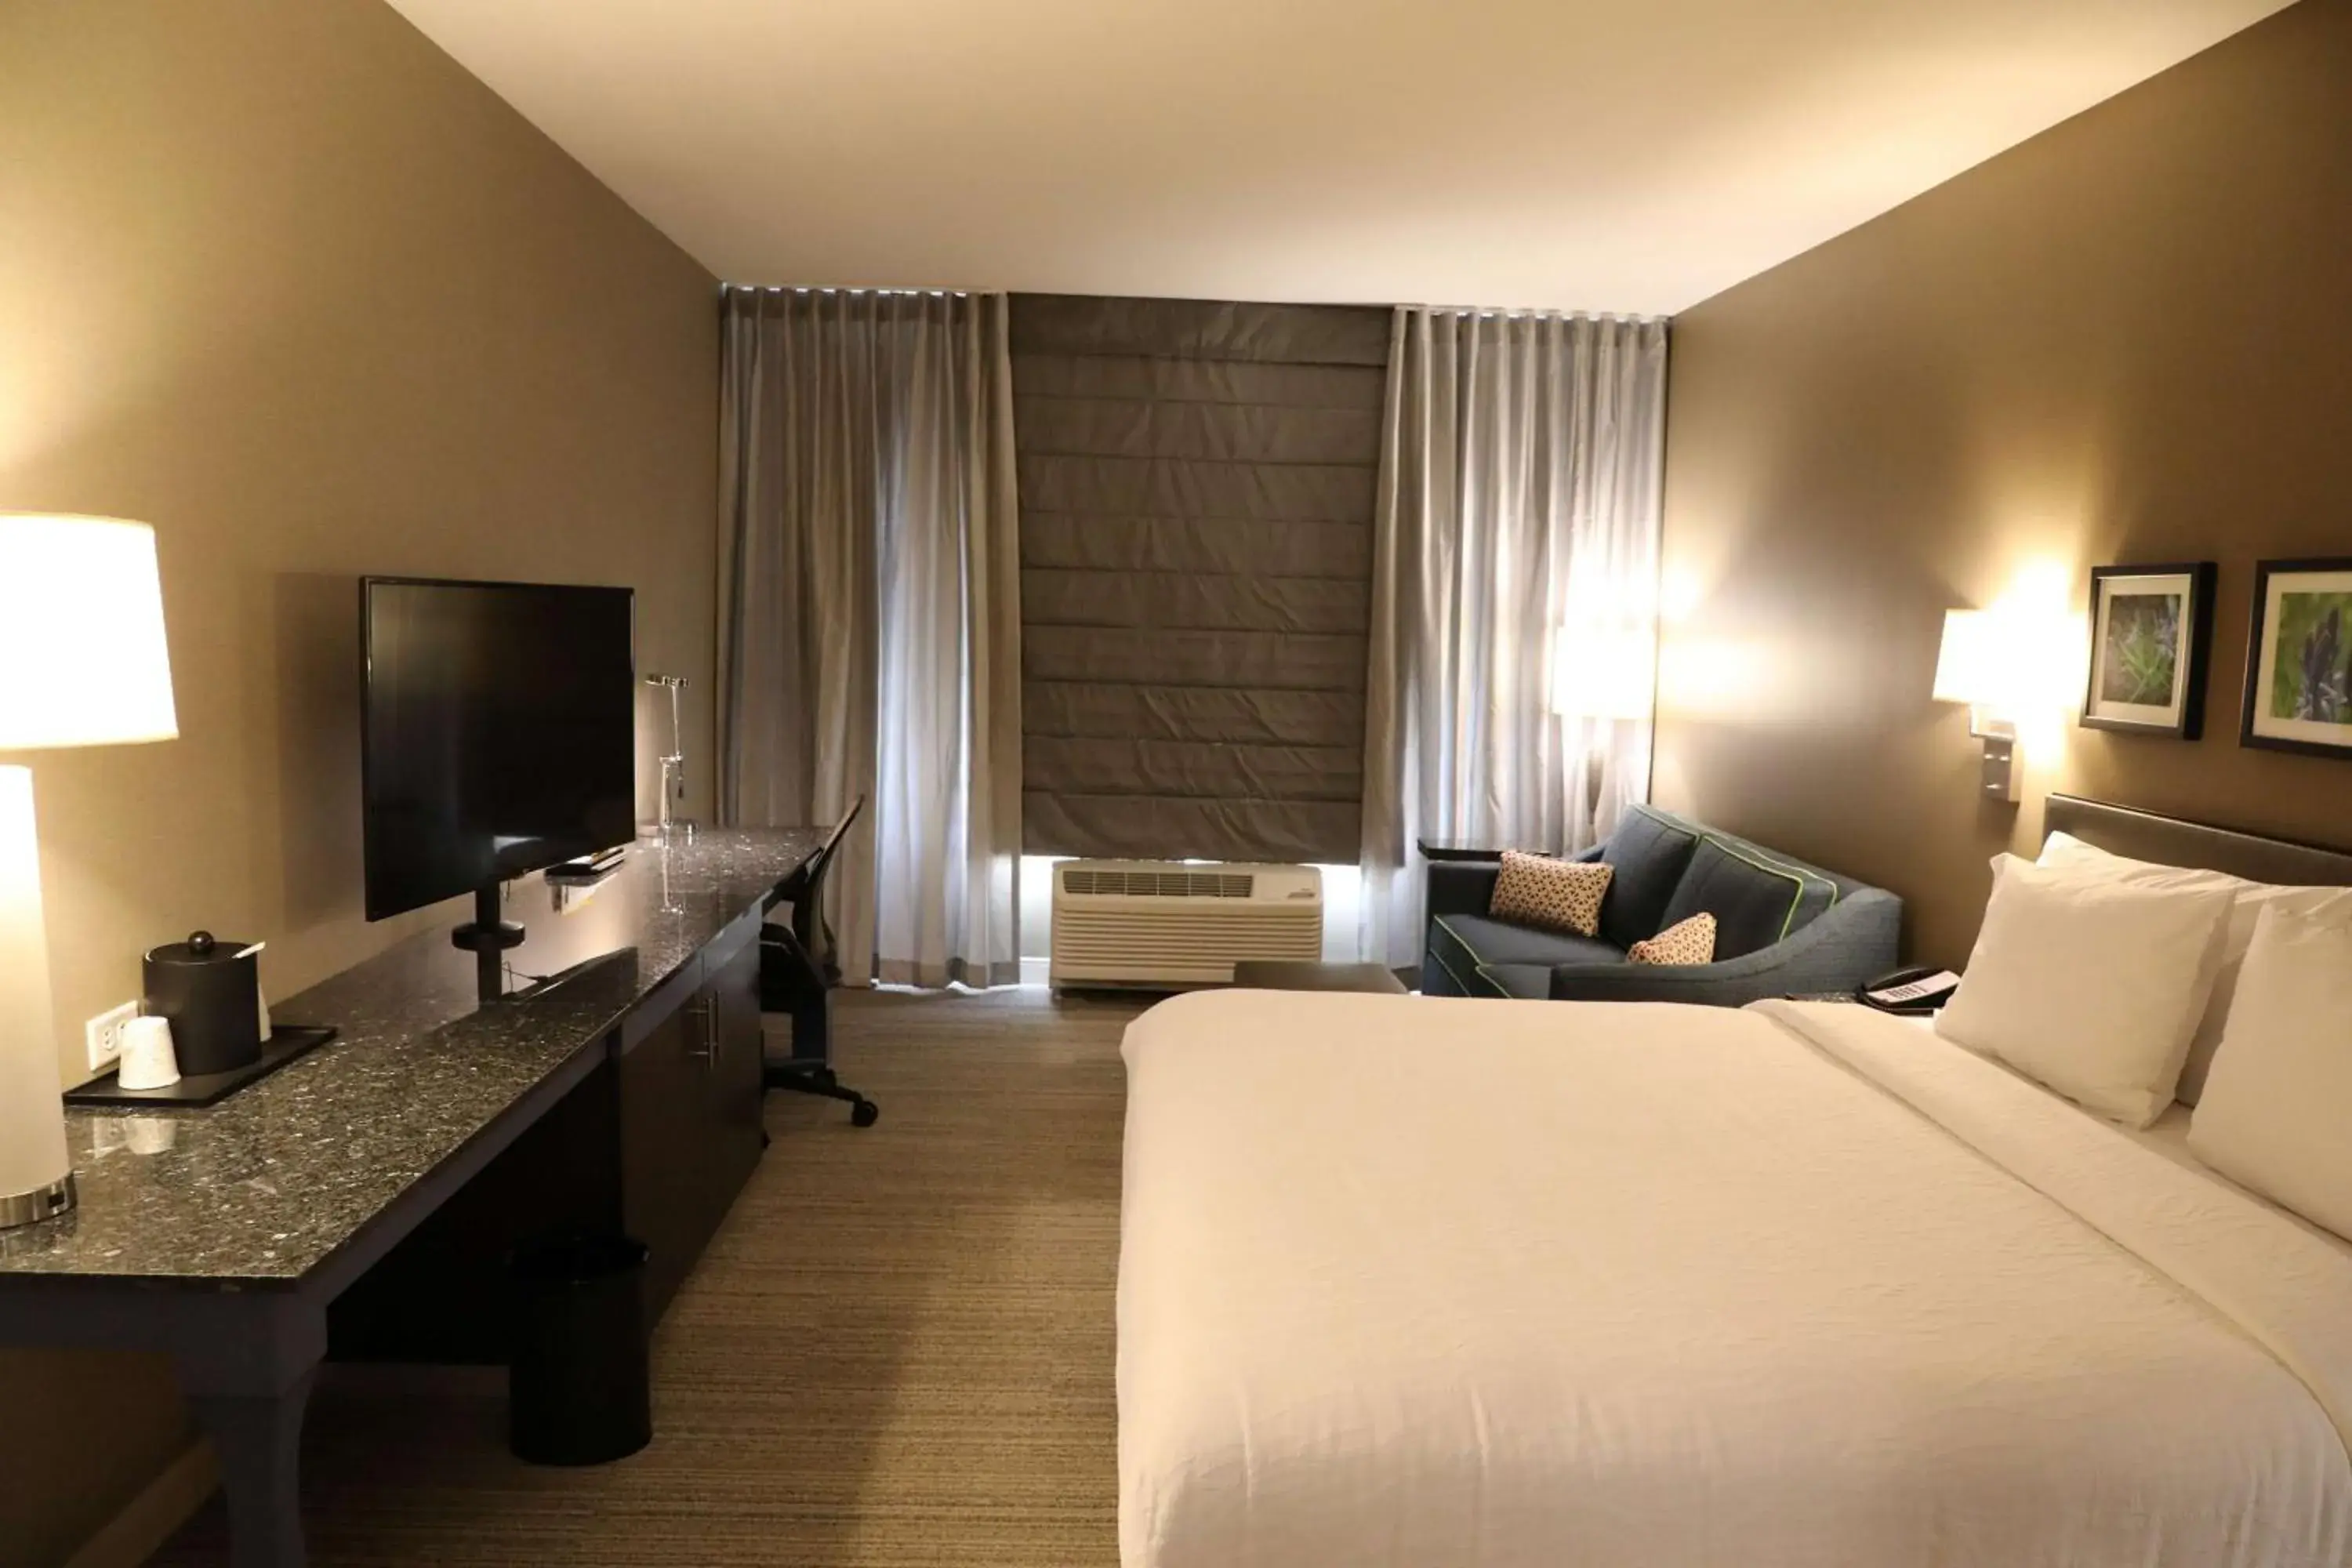 Bedroom, TV/Entertainment Center in Hilton Garden Inn Austin Airport